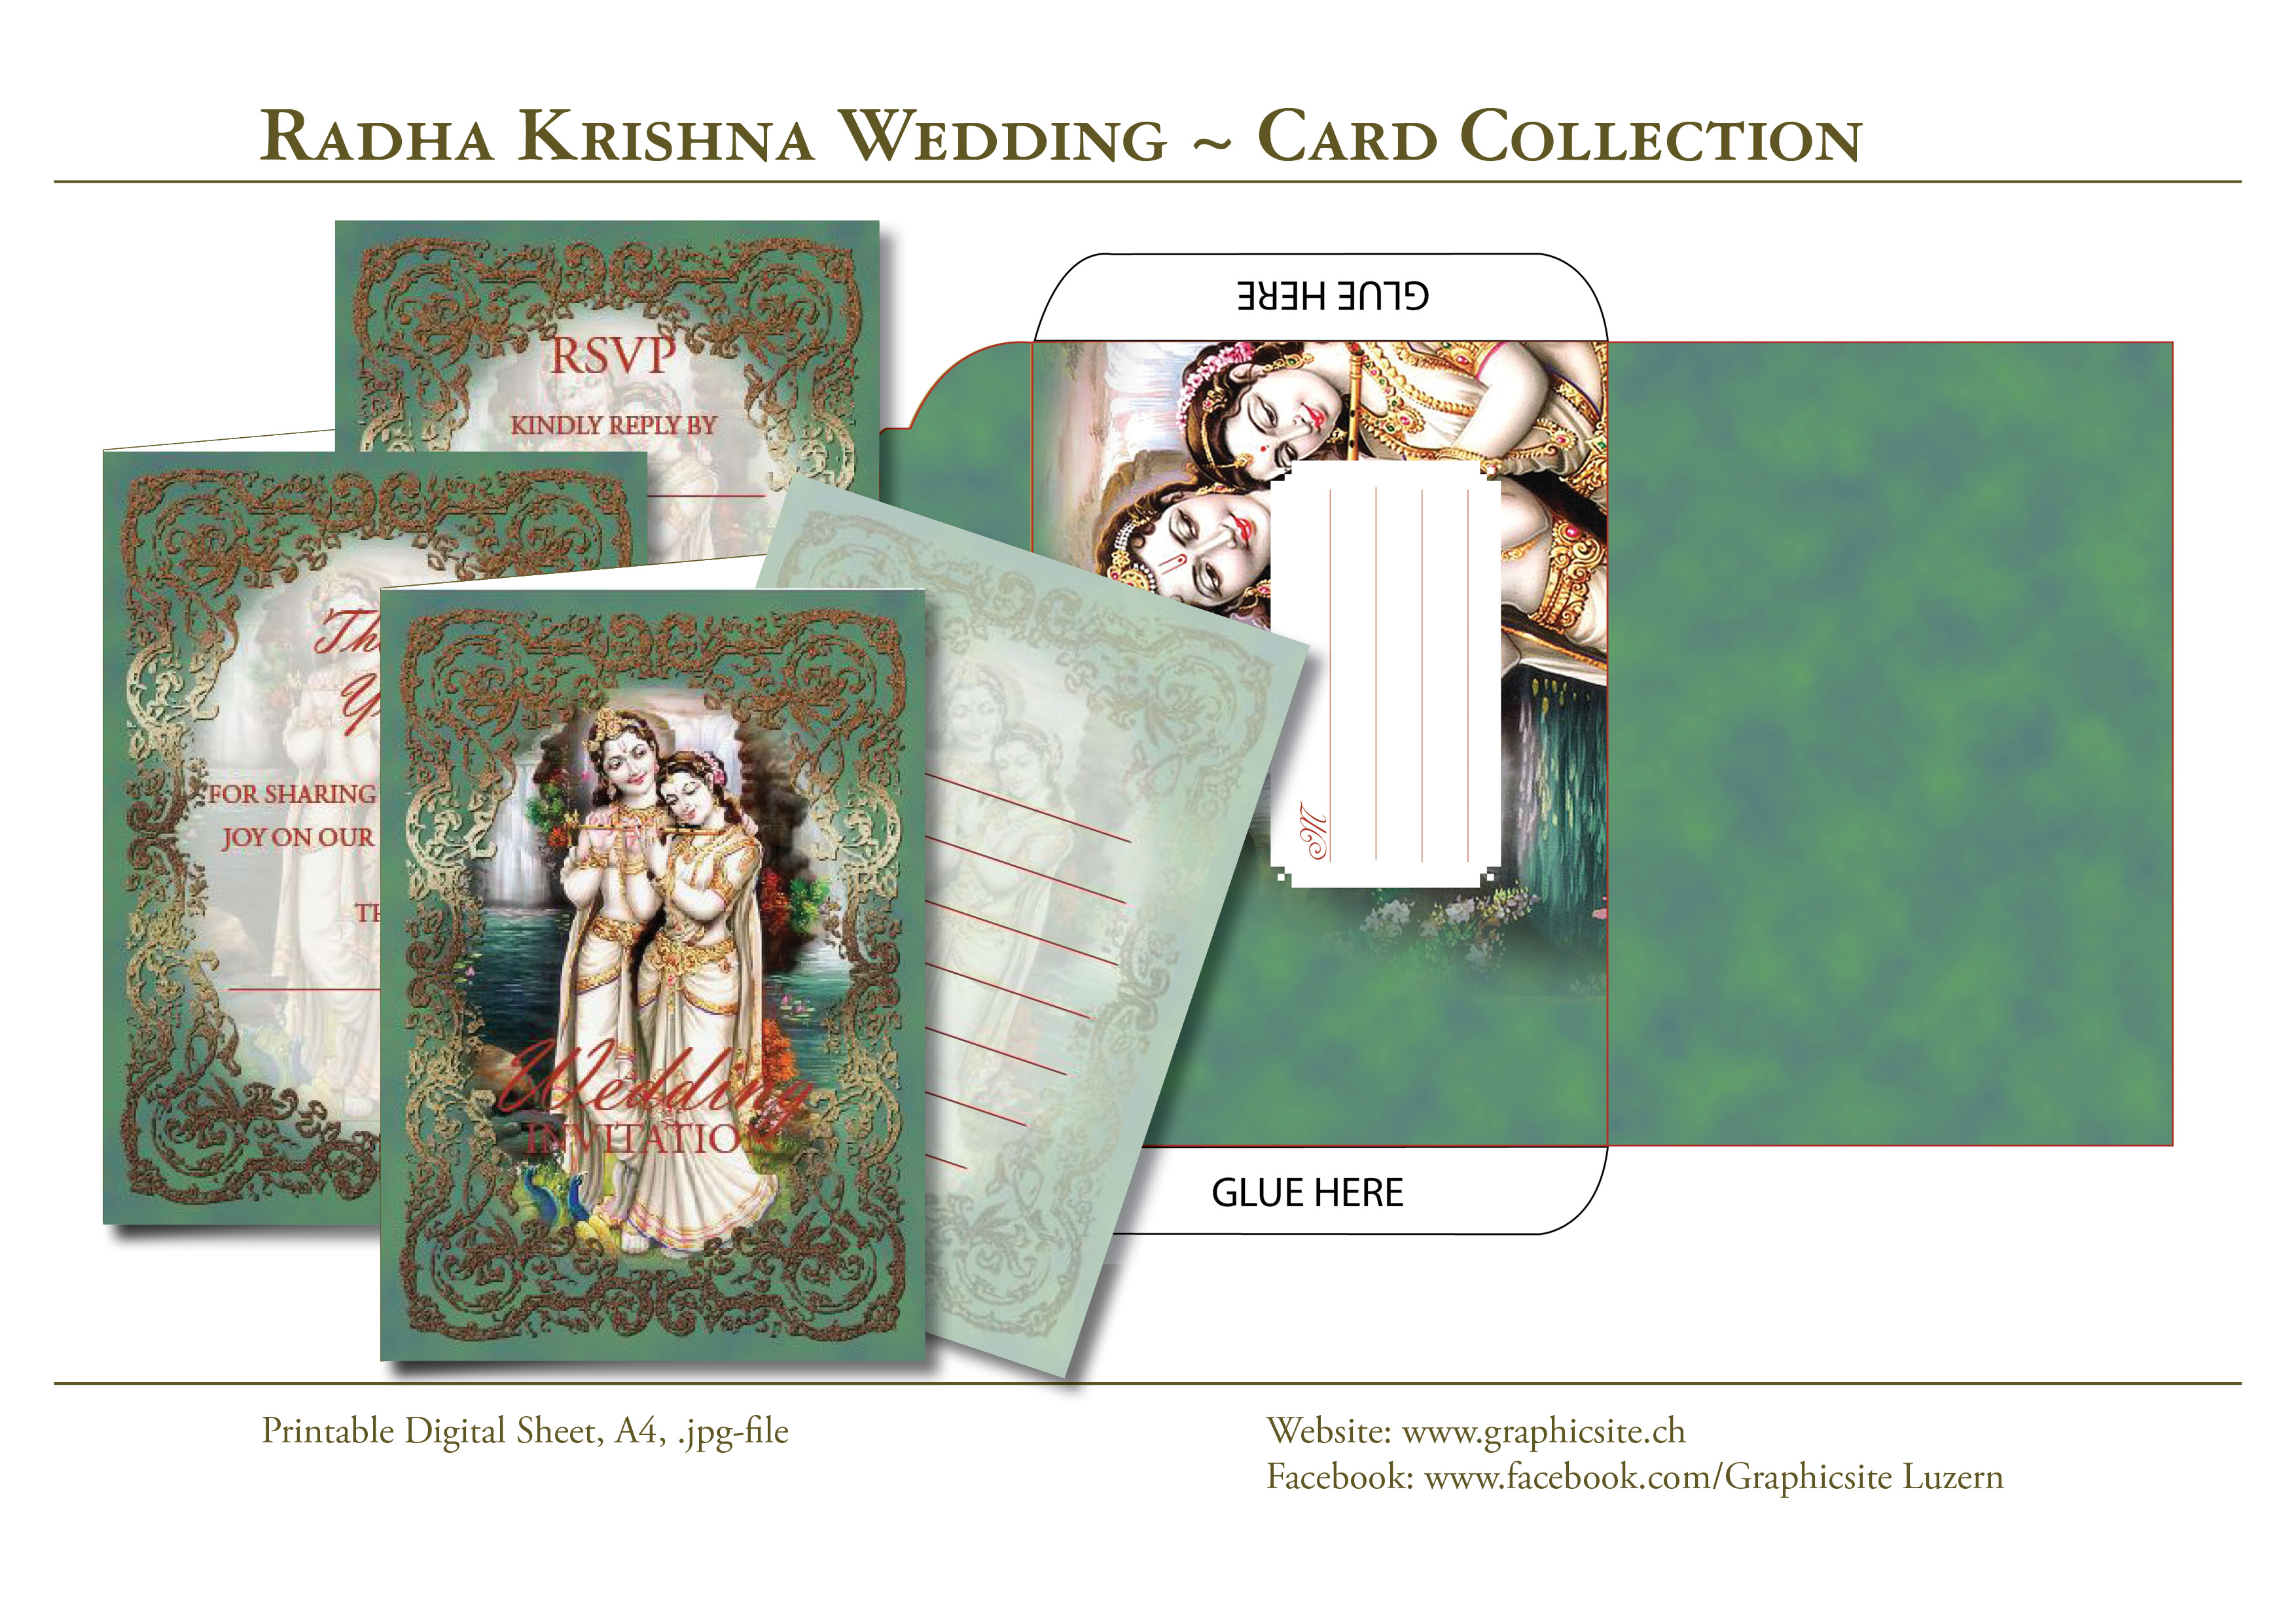 Printable Digital Sheets - Wedding Collections - Radha Krishna - Graphic Design Luzern, Schweiz